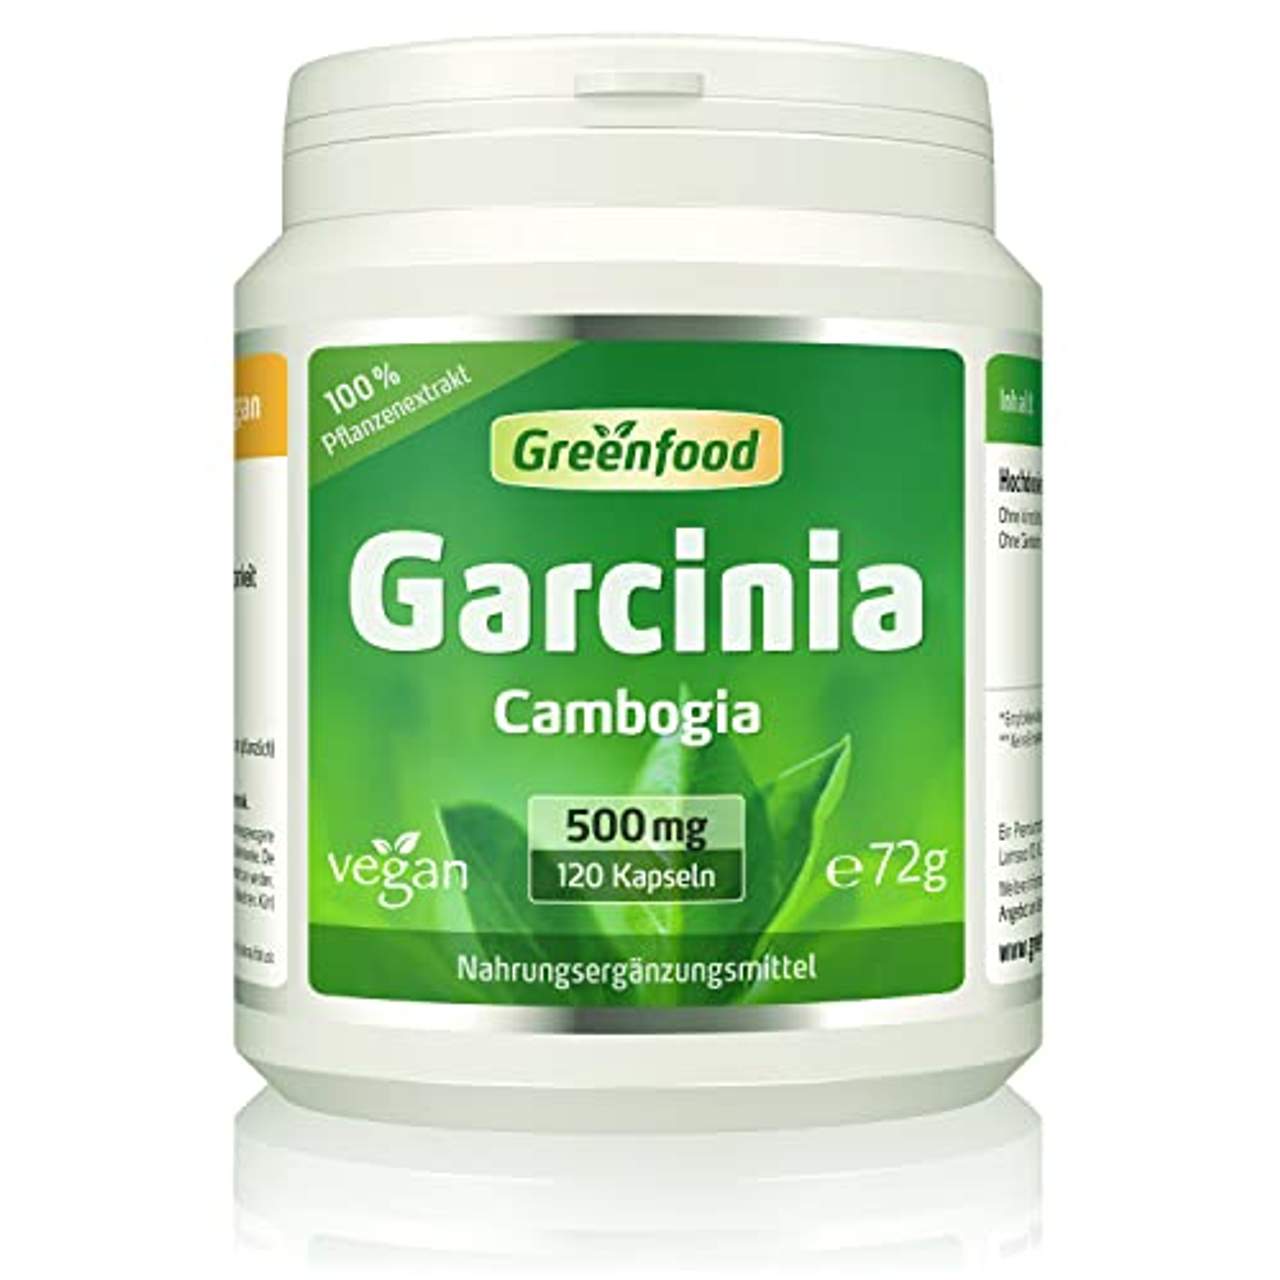 Greenfood Garcinia Cambogia pur